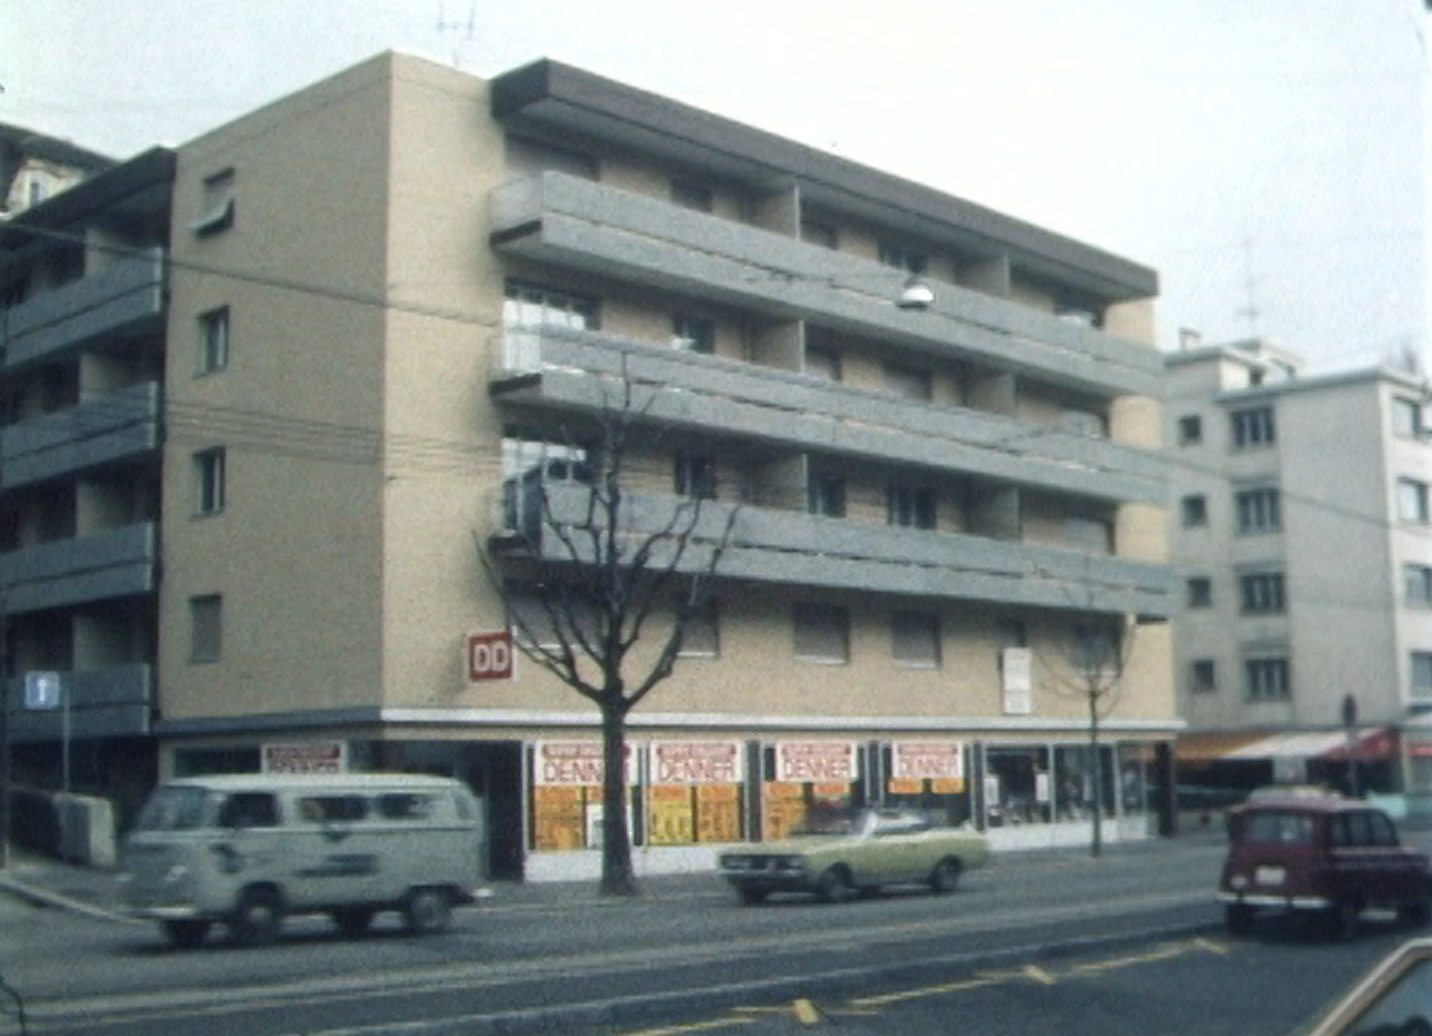 L'immeuble, situé rue d'Echallens à Lausanne, où a été séquestrée la petite Graziella Ortiz. [RTS]